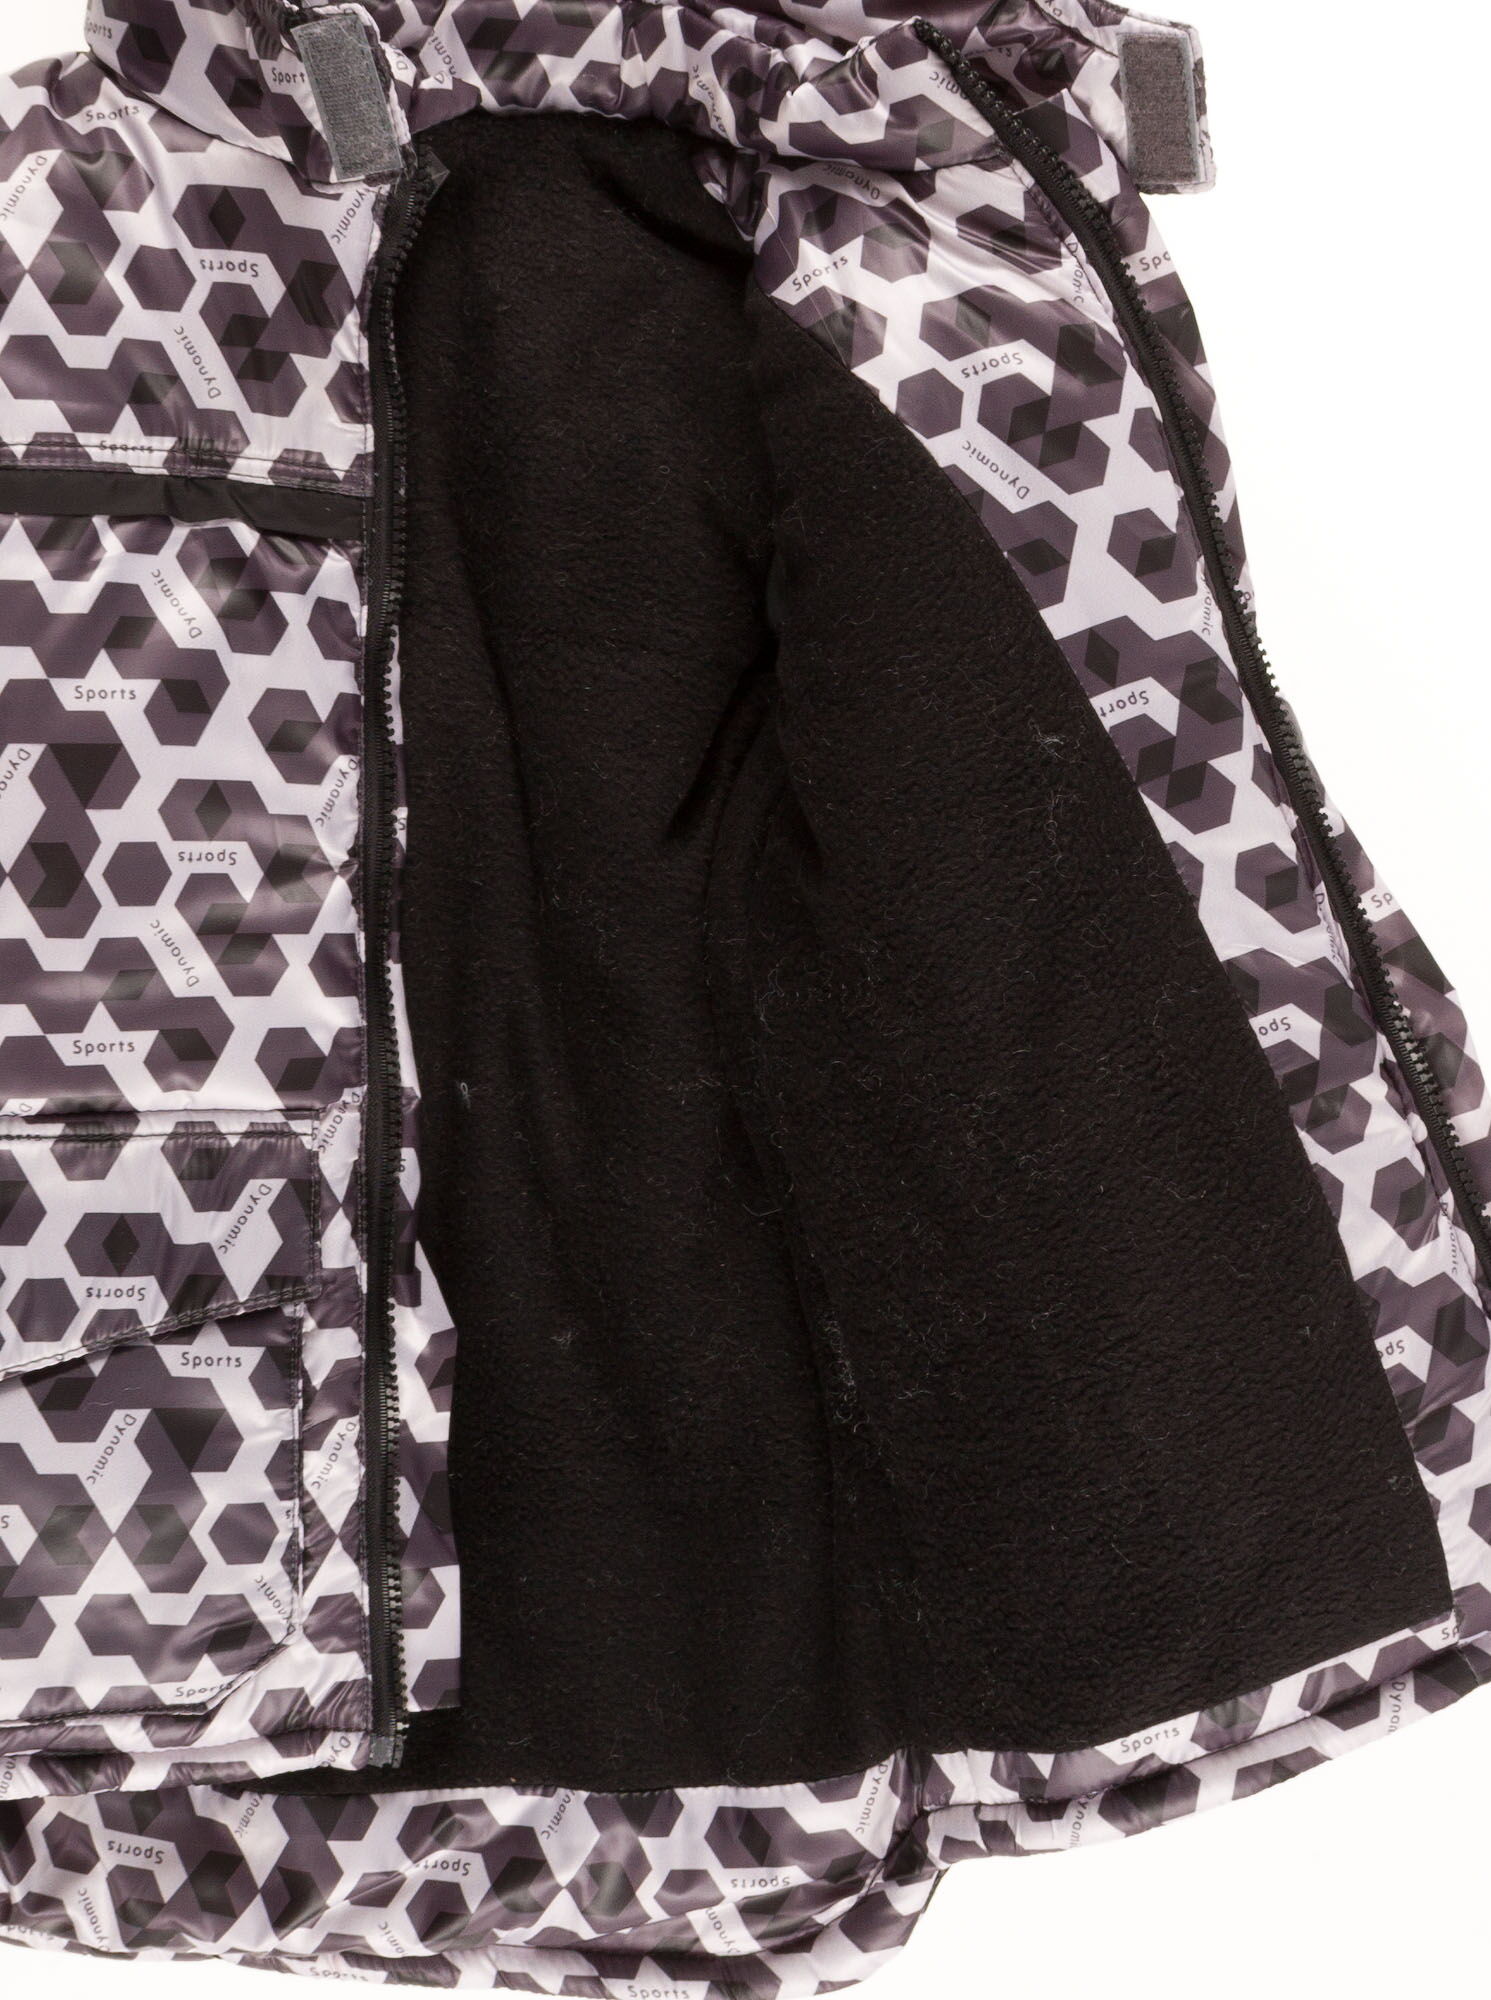 Комбинезон зимний раздельный для мальчика (куртка+штаны) Одягайко геометрия черный 20088+01241О - Киев